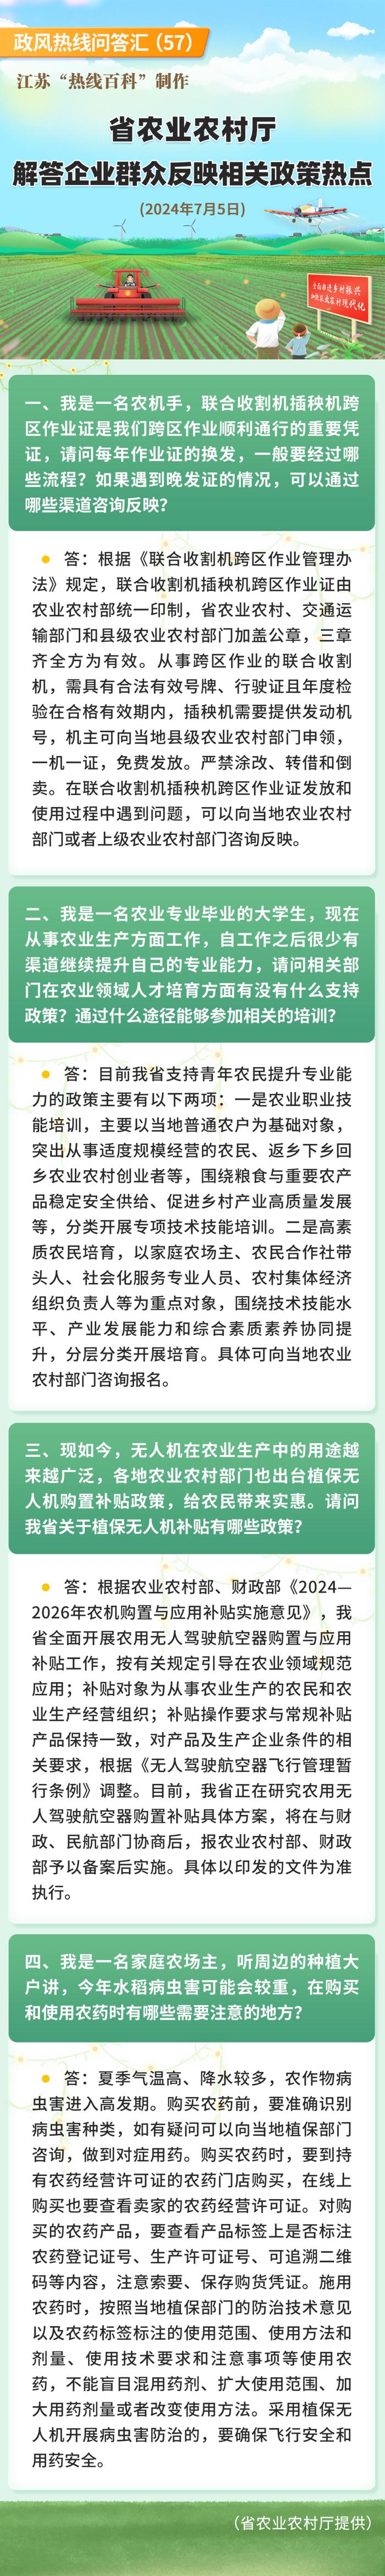 江苏省农业农村厅解答企业群众反映相关政策热点